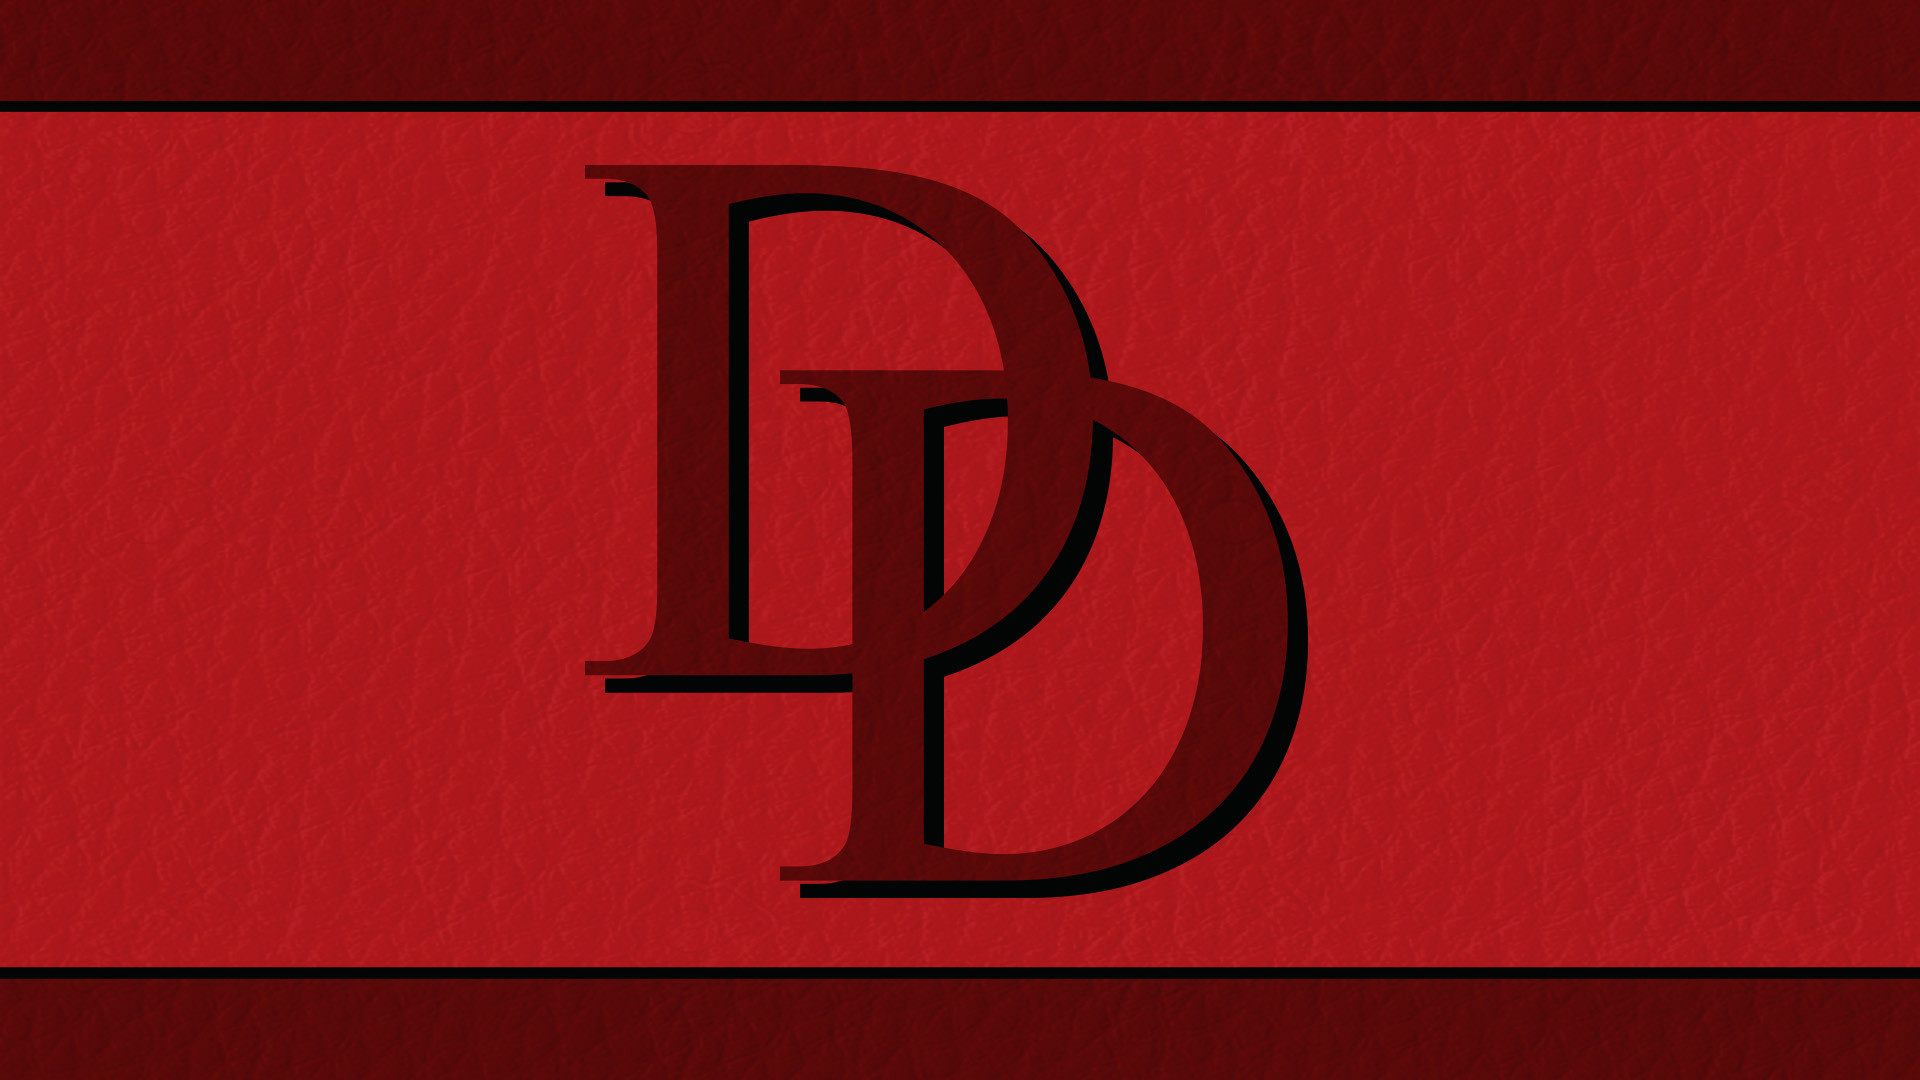 Daredevil Logo Wallpaper Full Hd On Wallpaper Hd 1920 x 1080 px 623.08 KB logo rivera